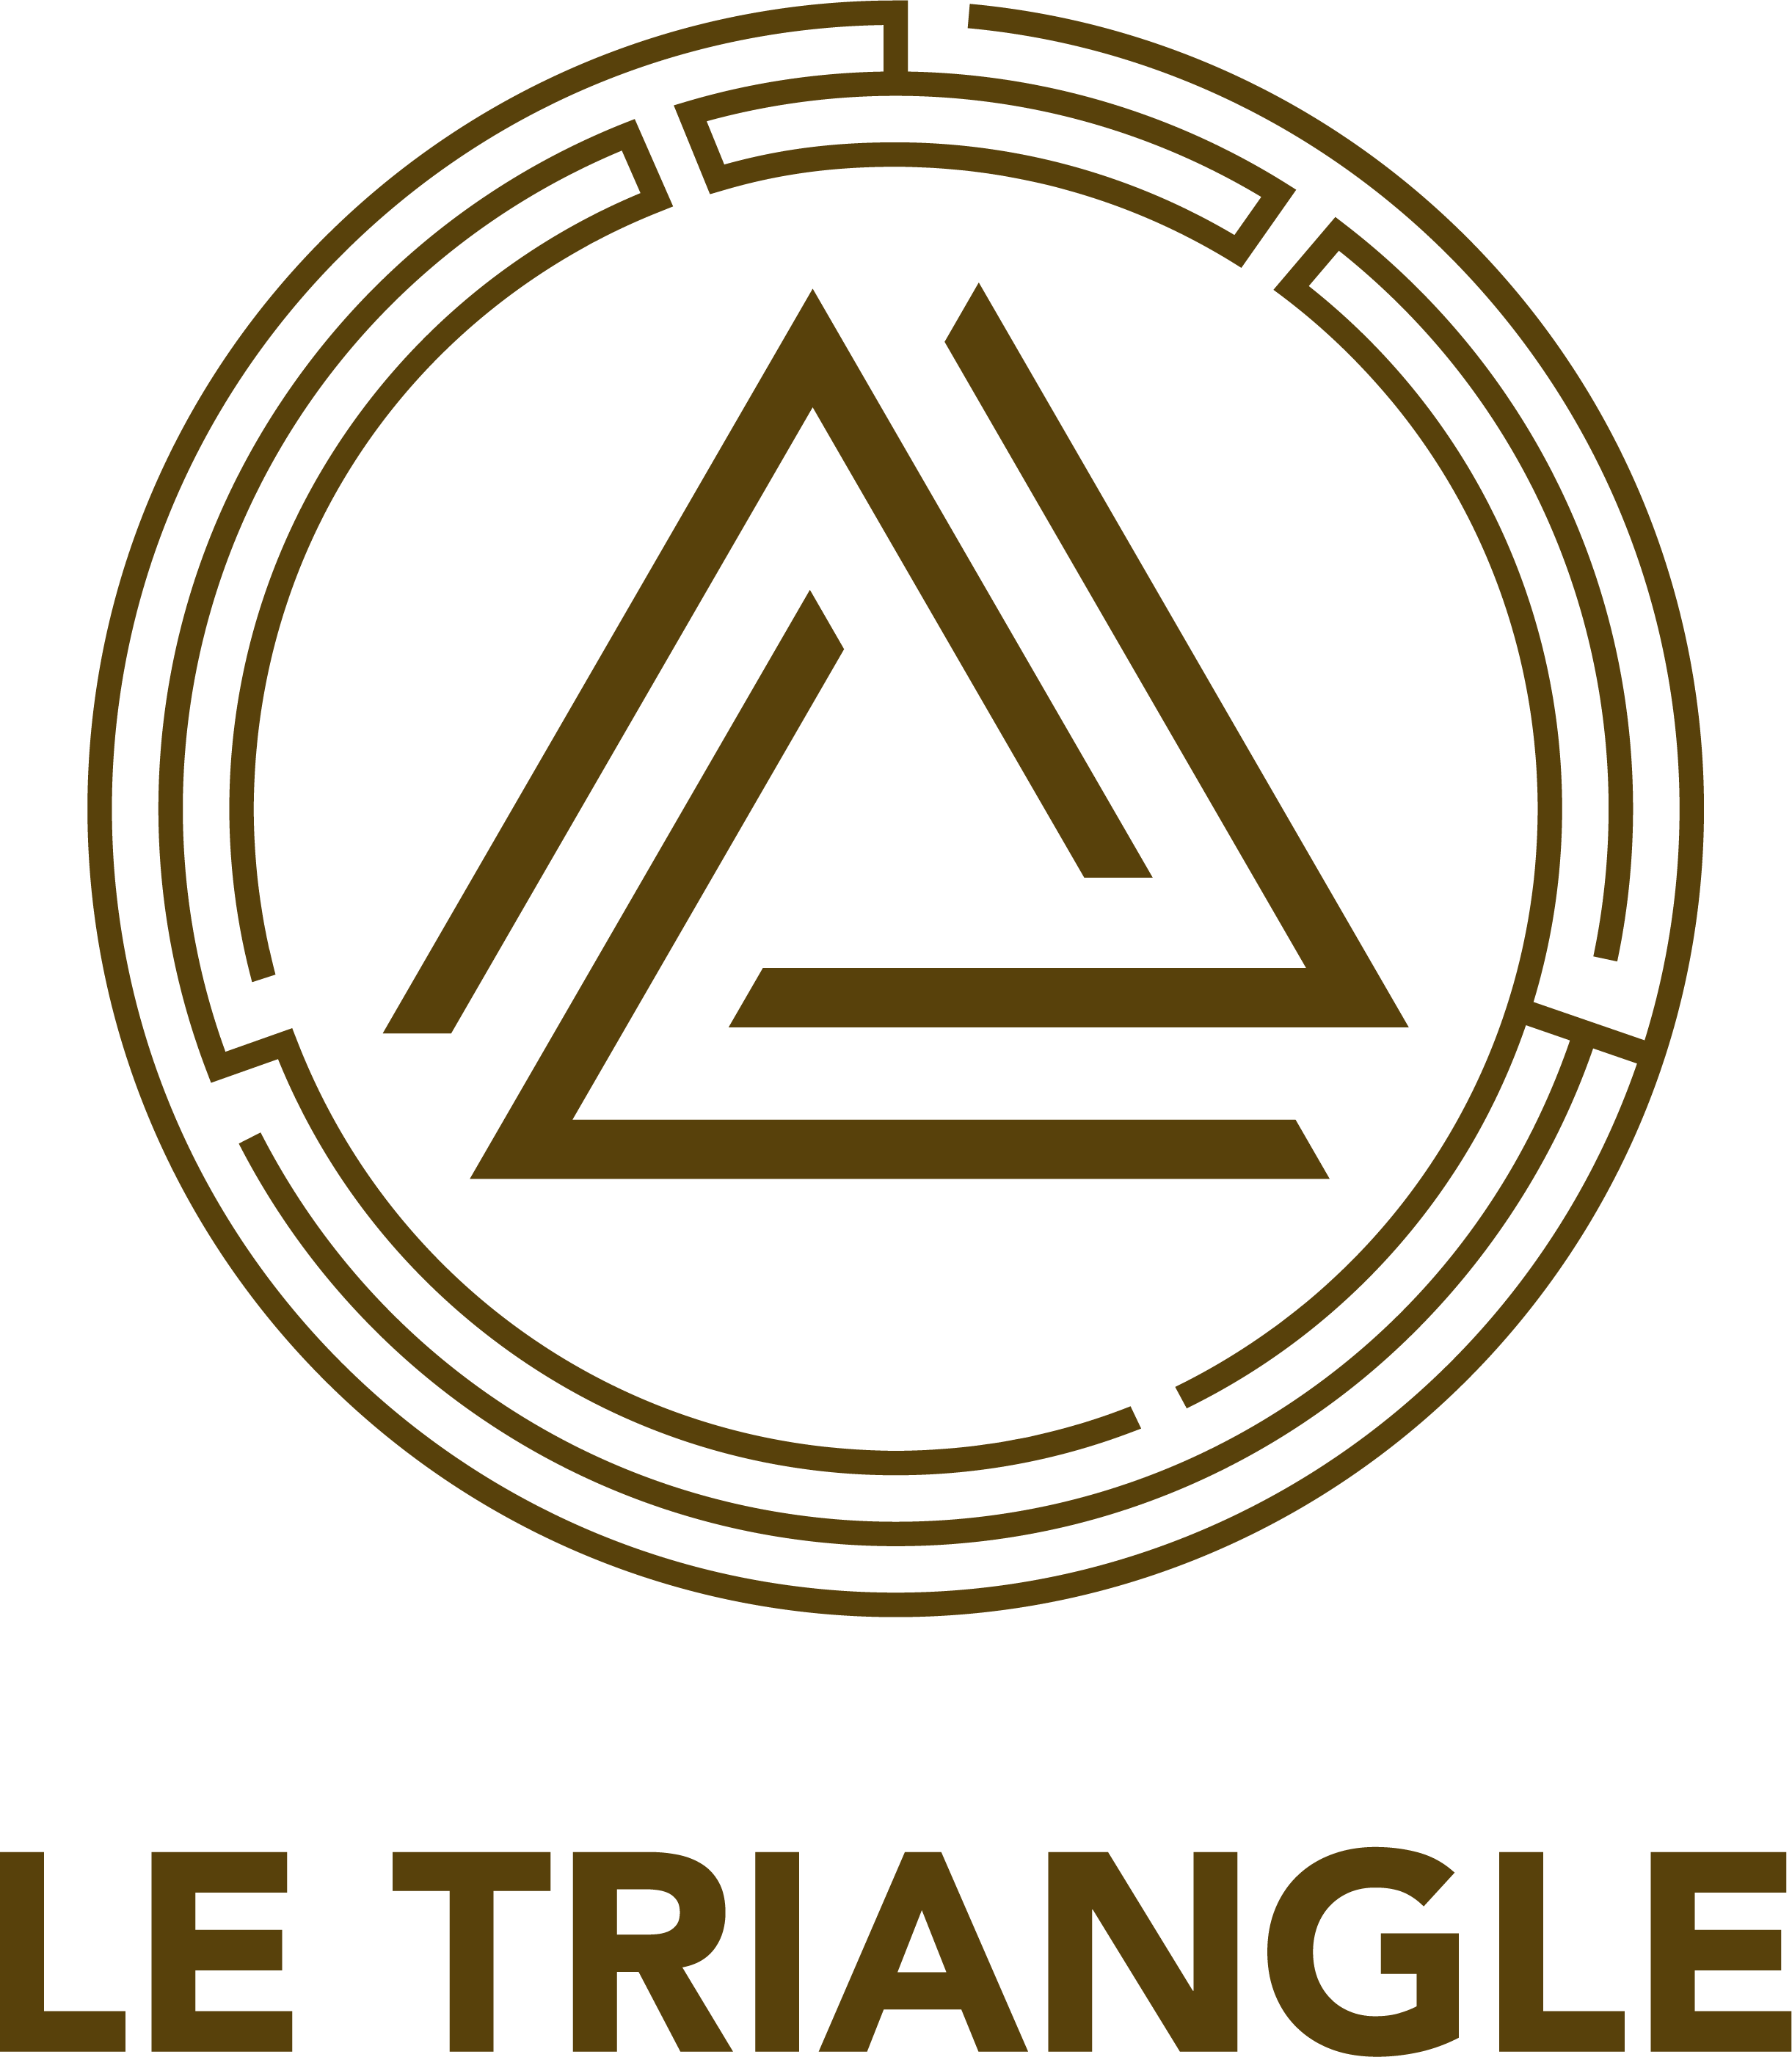 Le Triangle